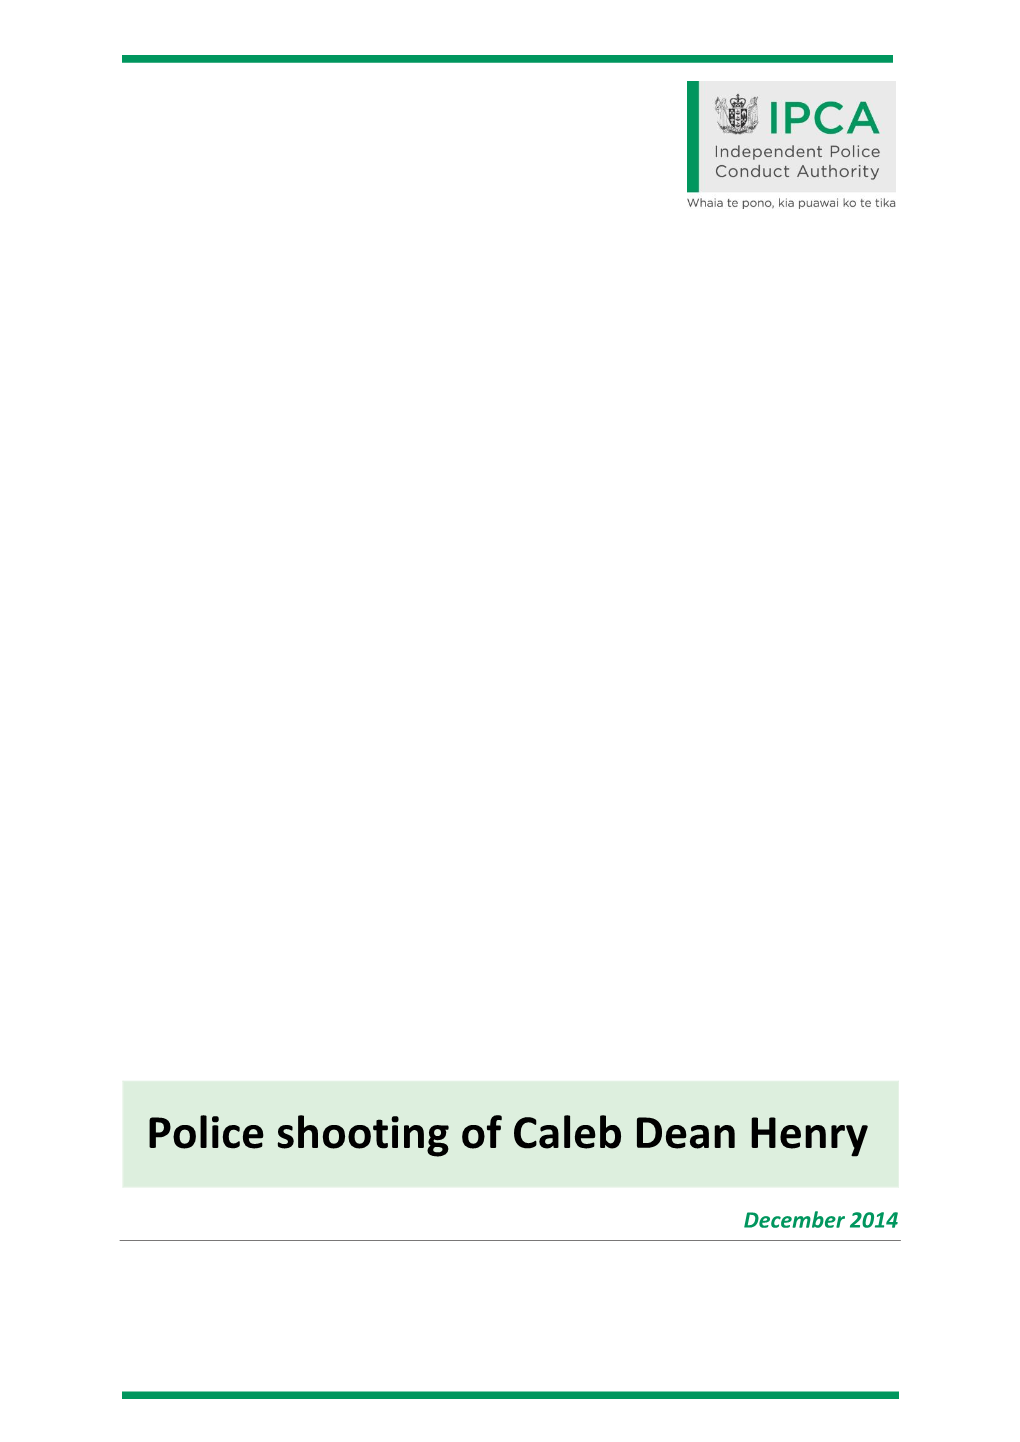 Police Shooting of Caleb Dean Henry